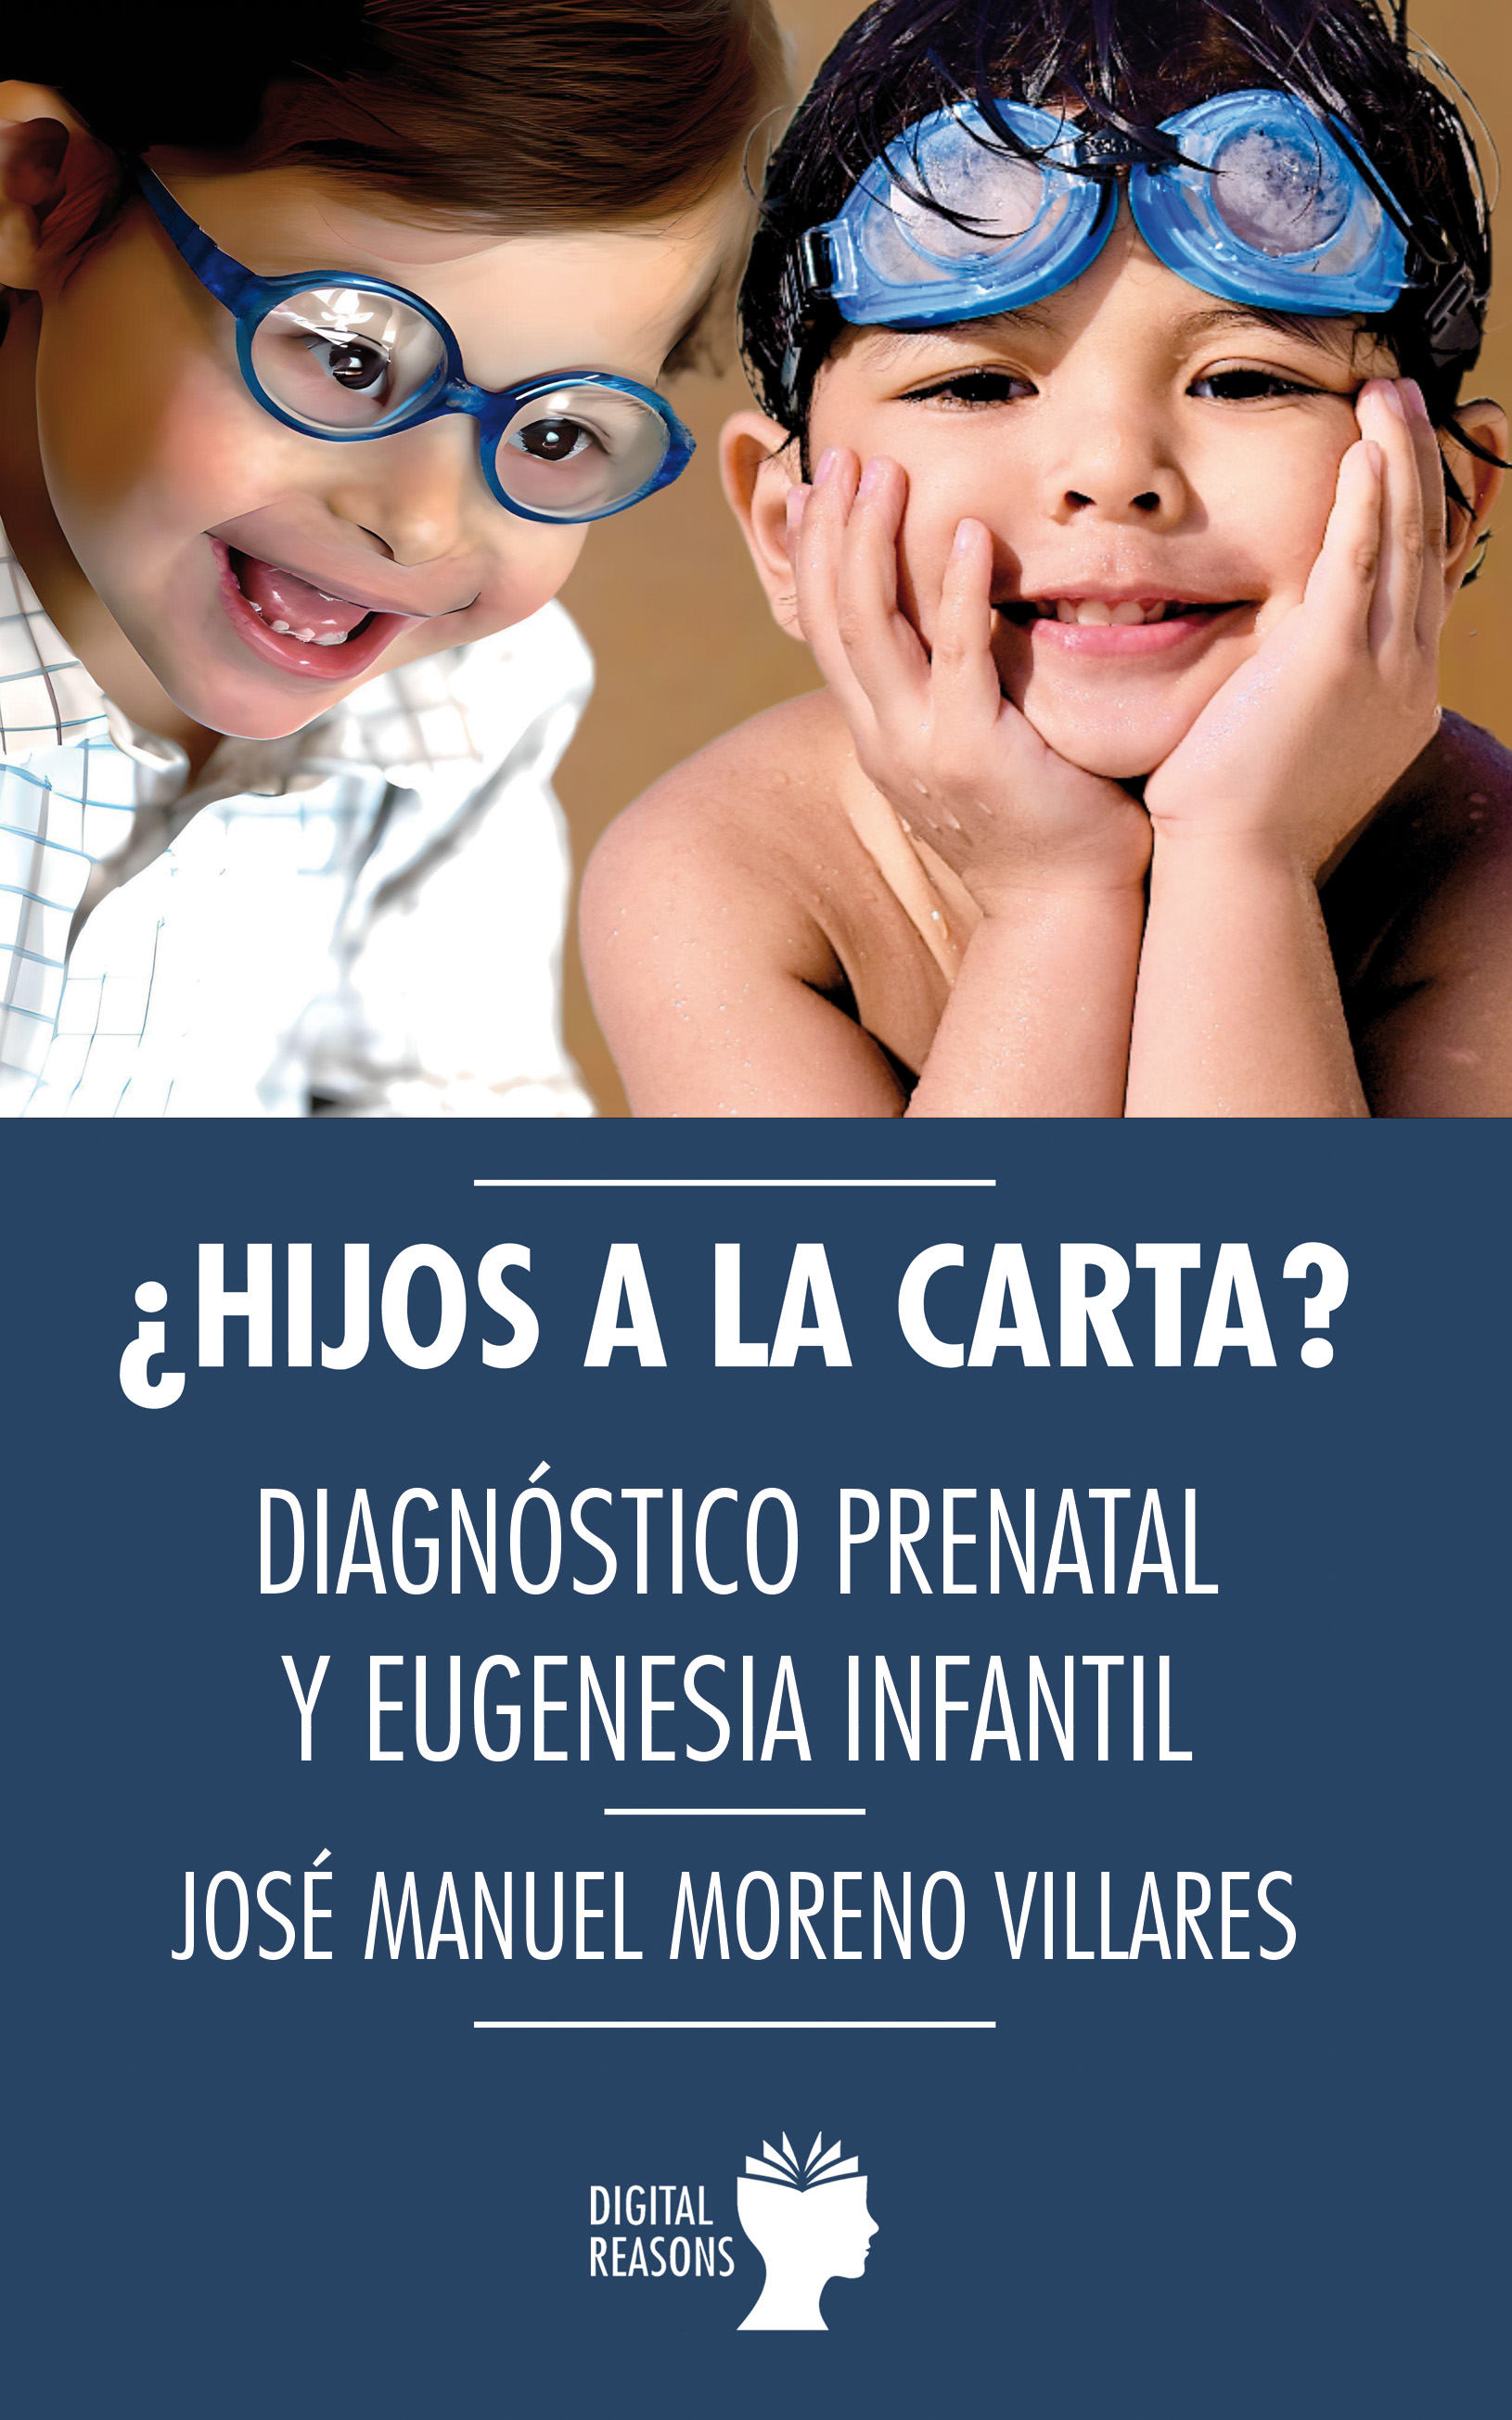 ¿Hijos a la carta? Diagnóstico prenatal y eugenesia infantil